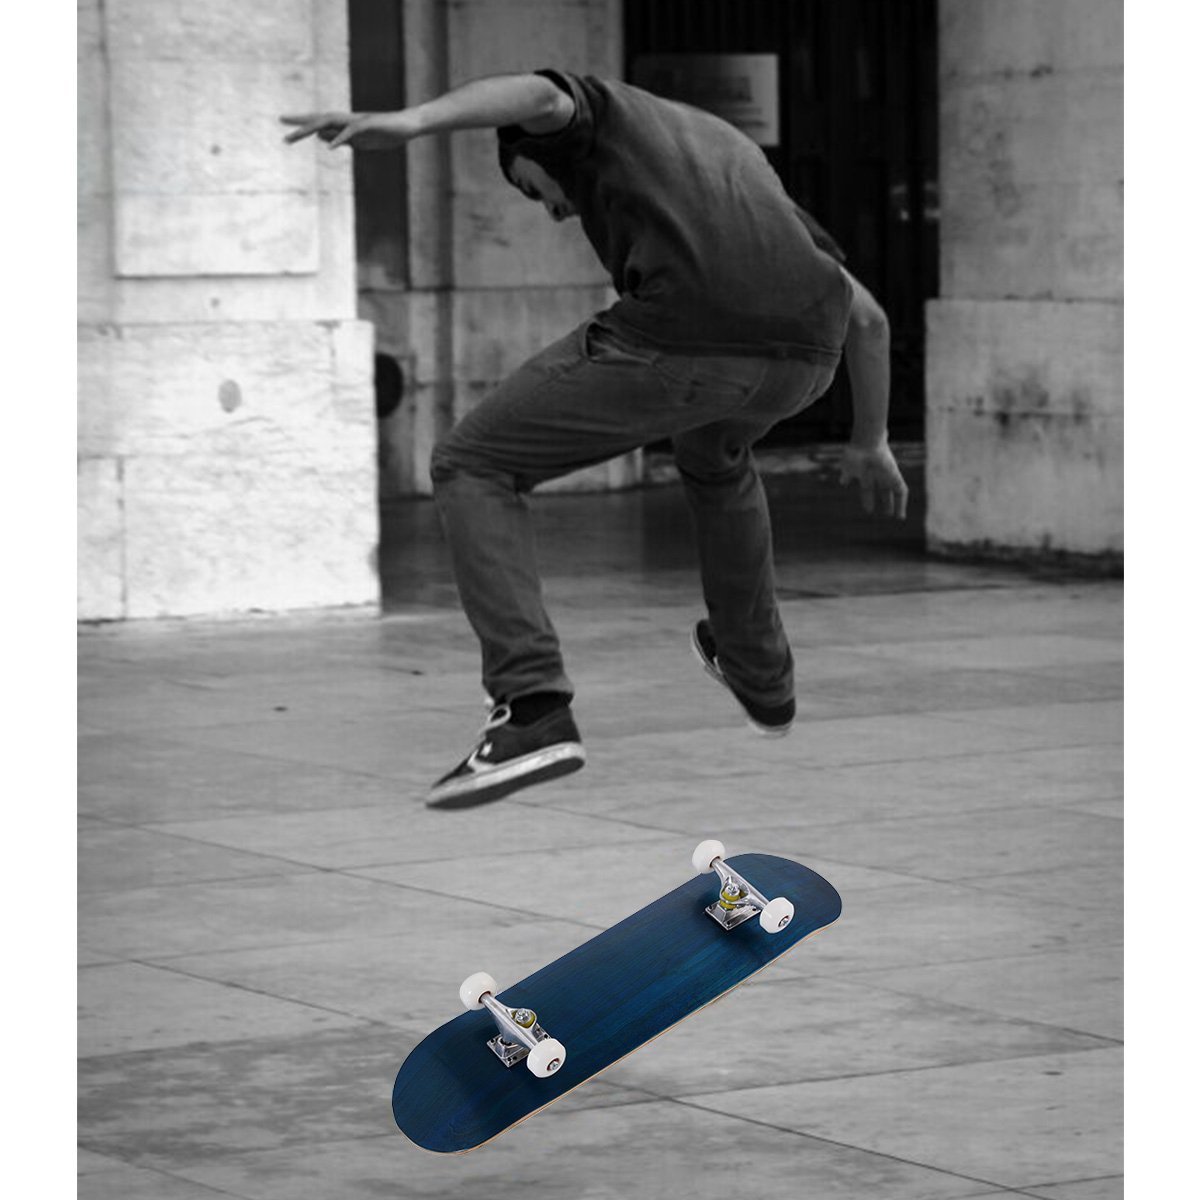 Skateboard Komplettboard Funboard Minicruiser Holzboard Longboard 20x79cm-blau von Costway